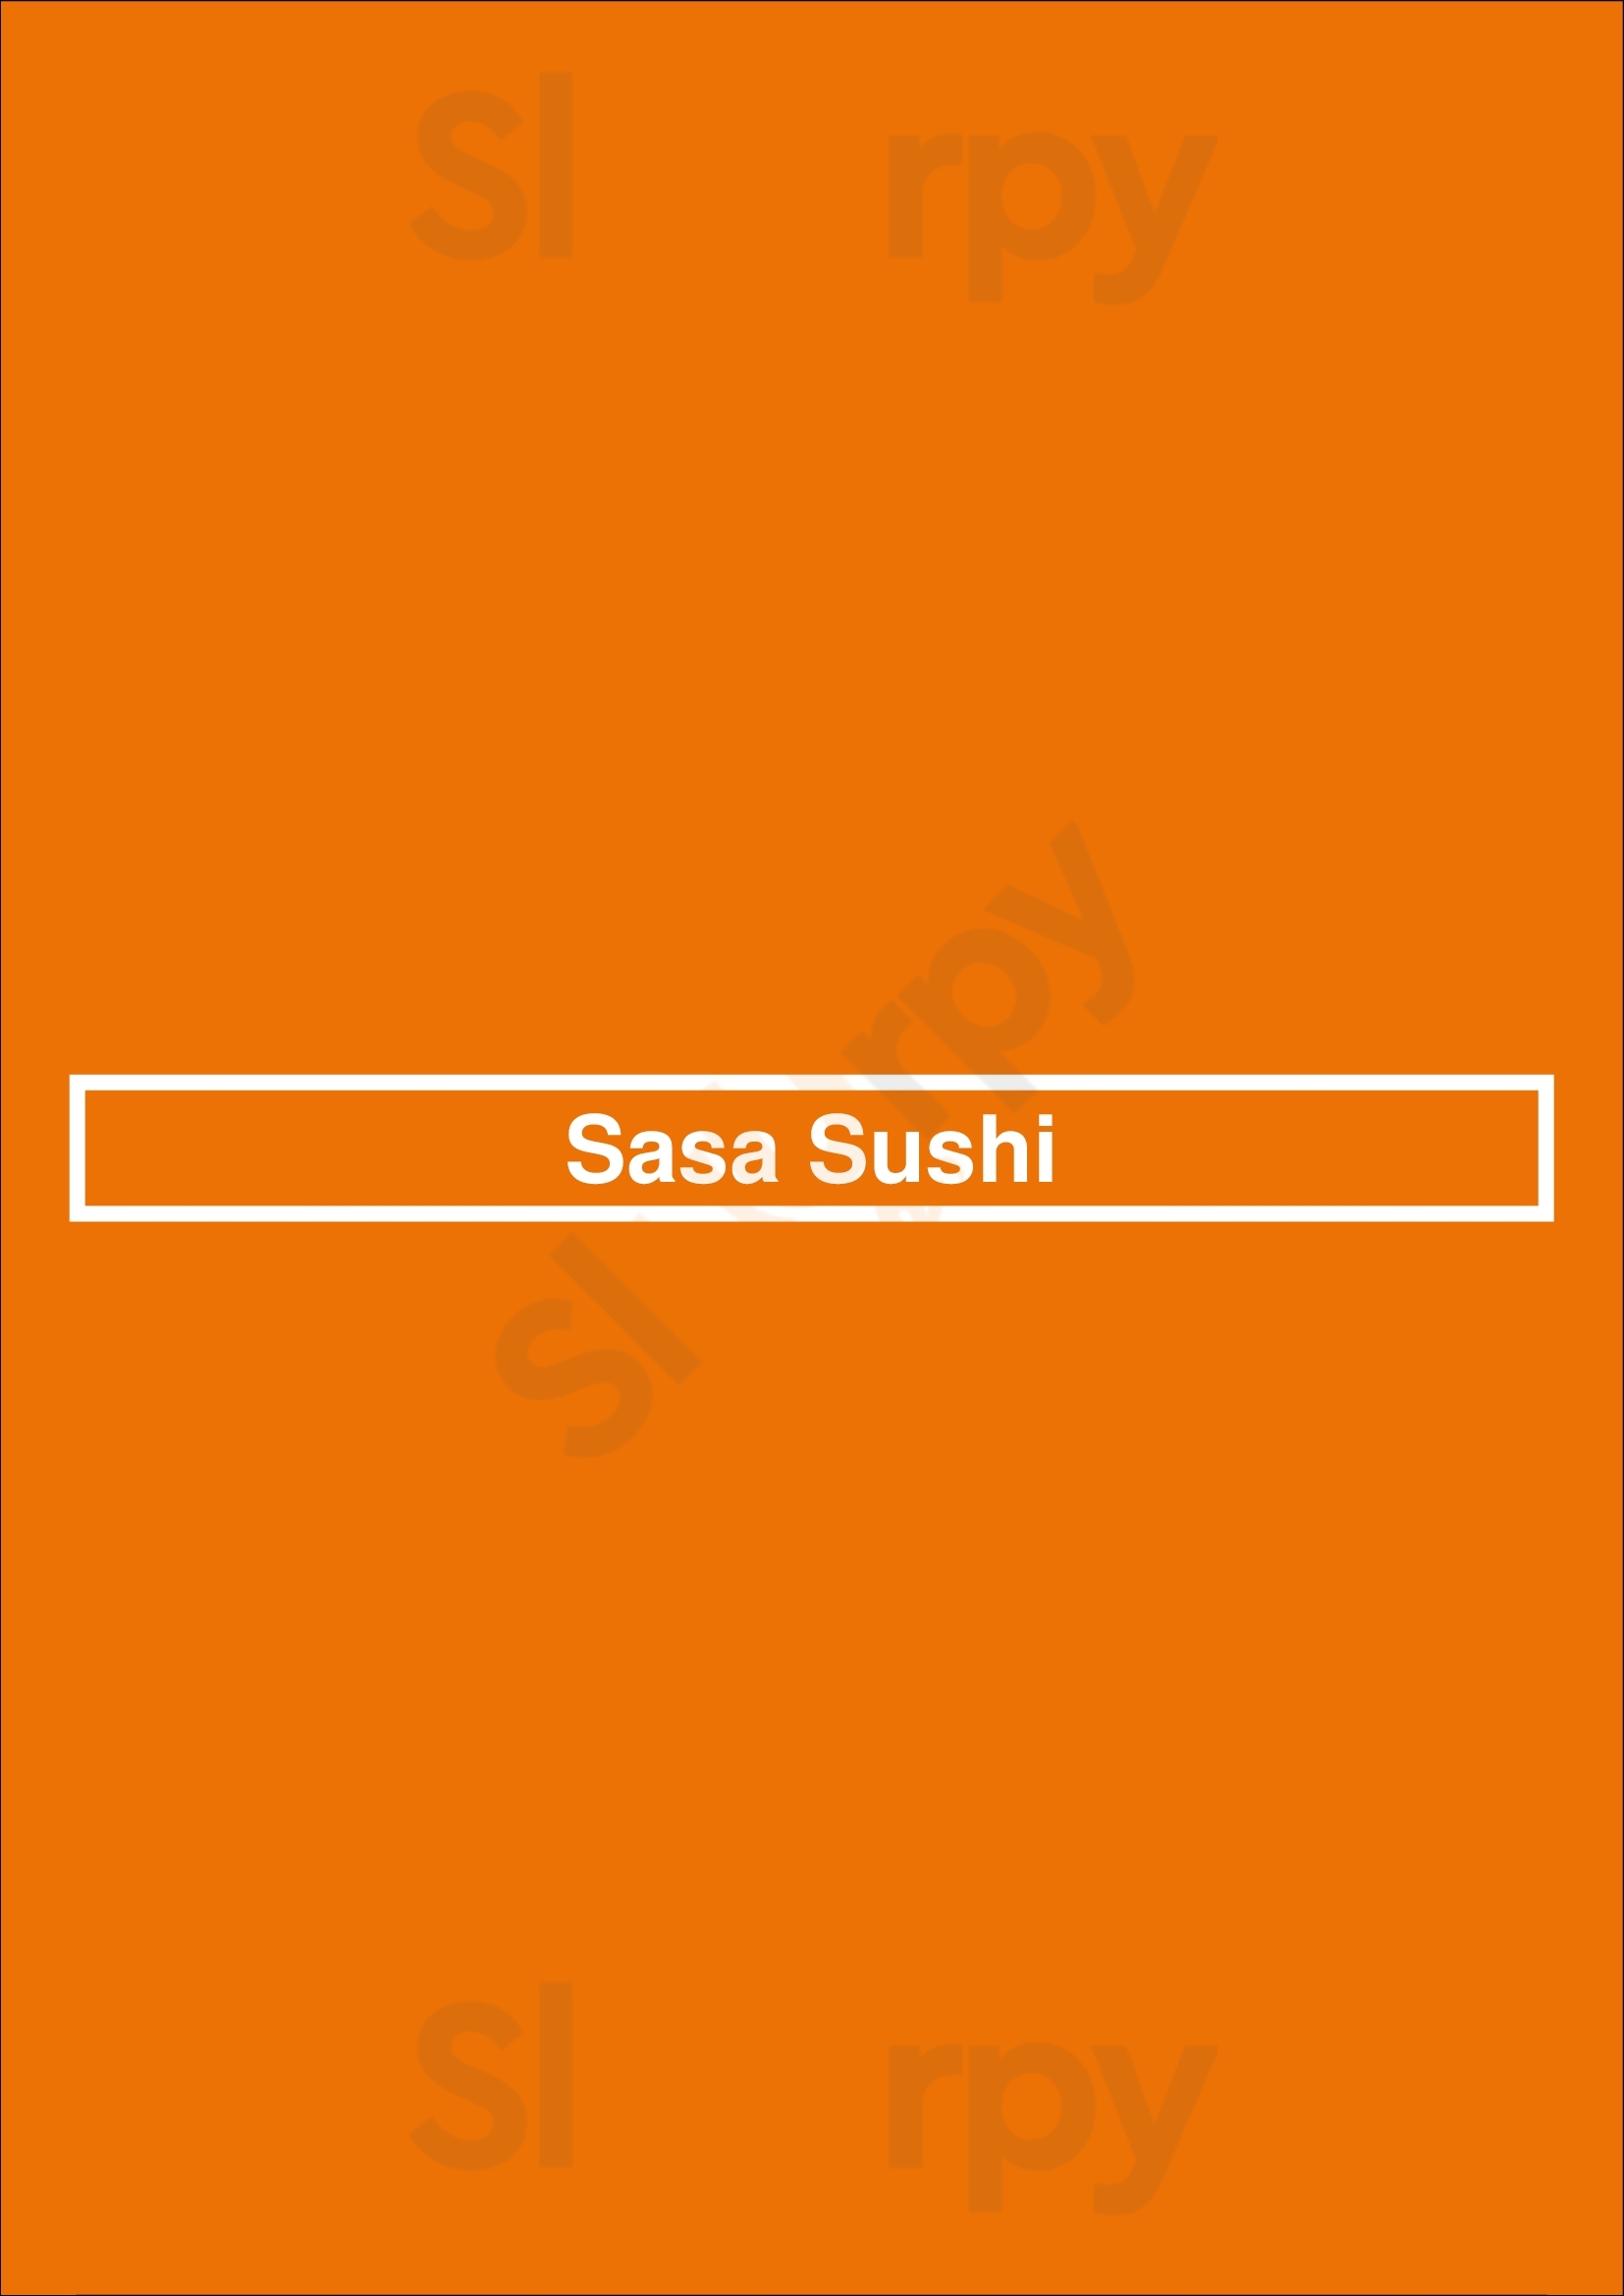 Sasa Sushi Las Vegas Menu - 1